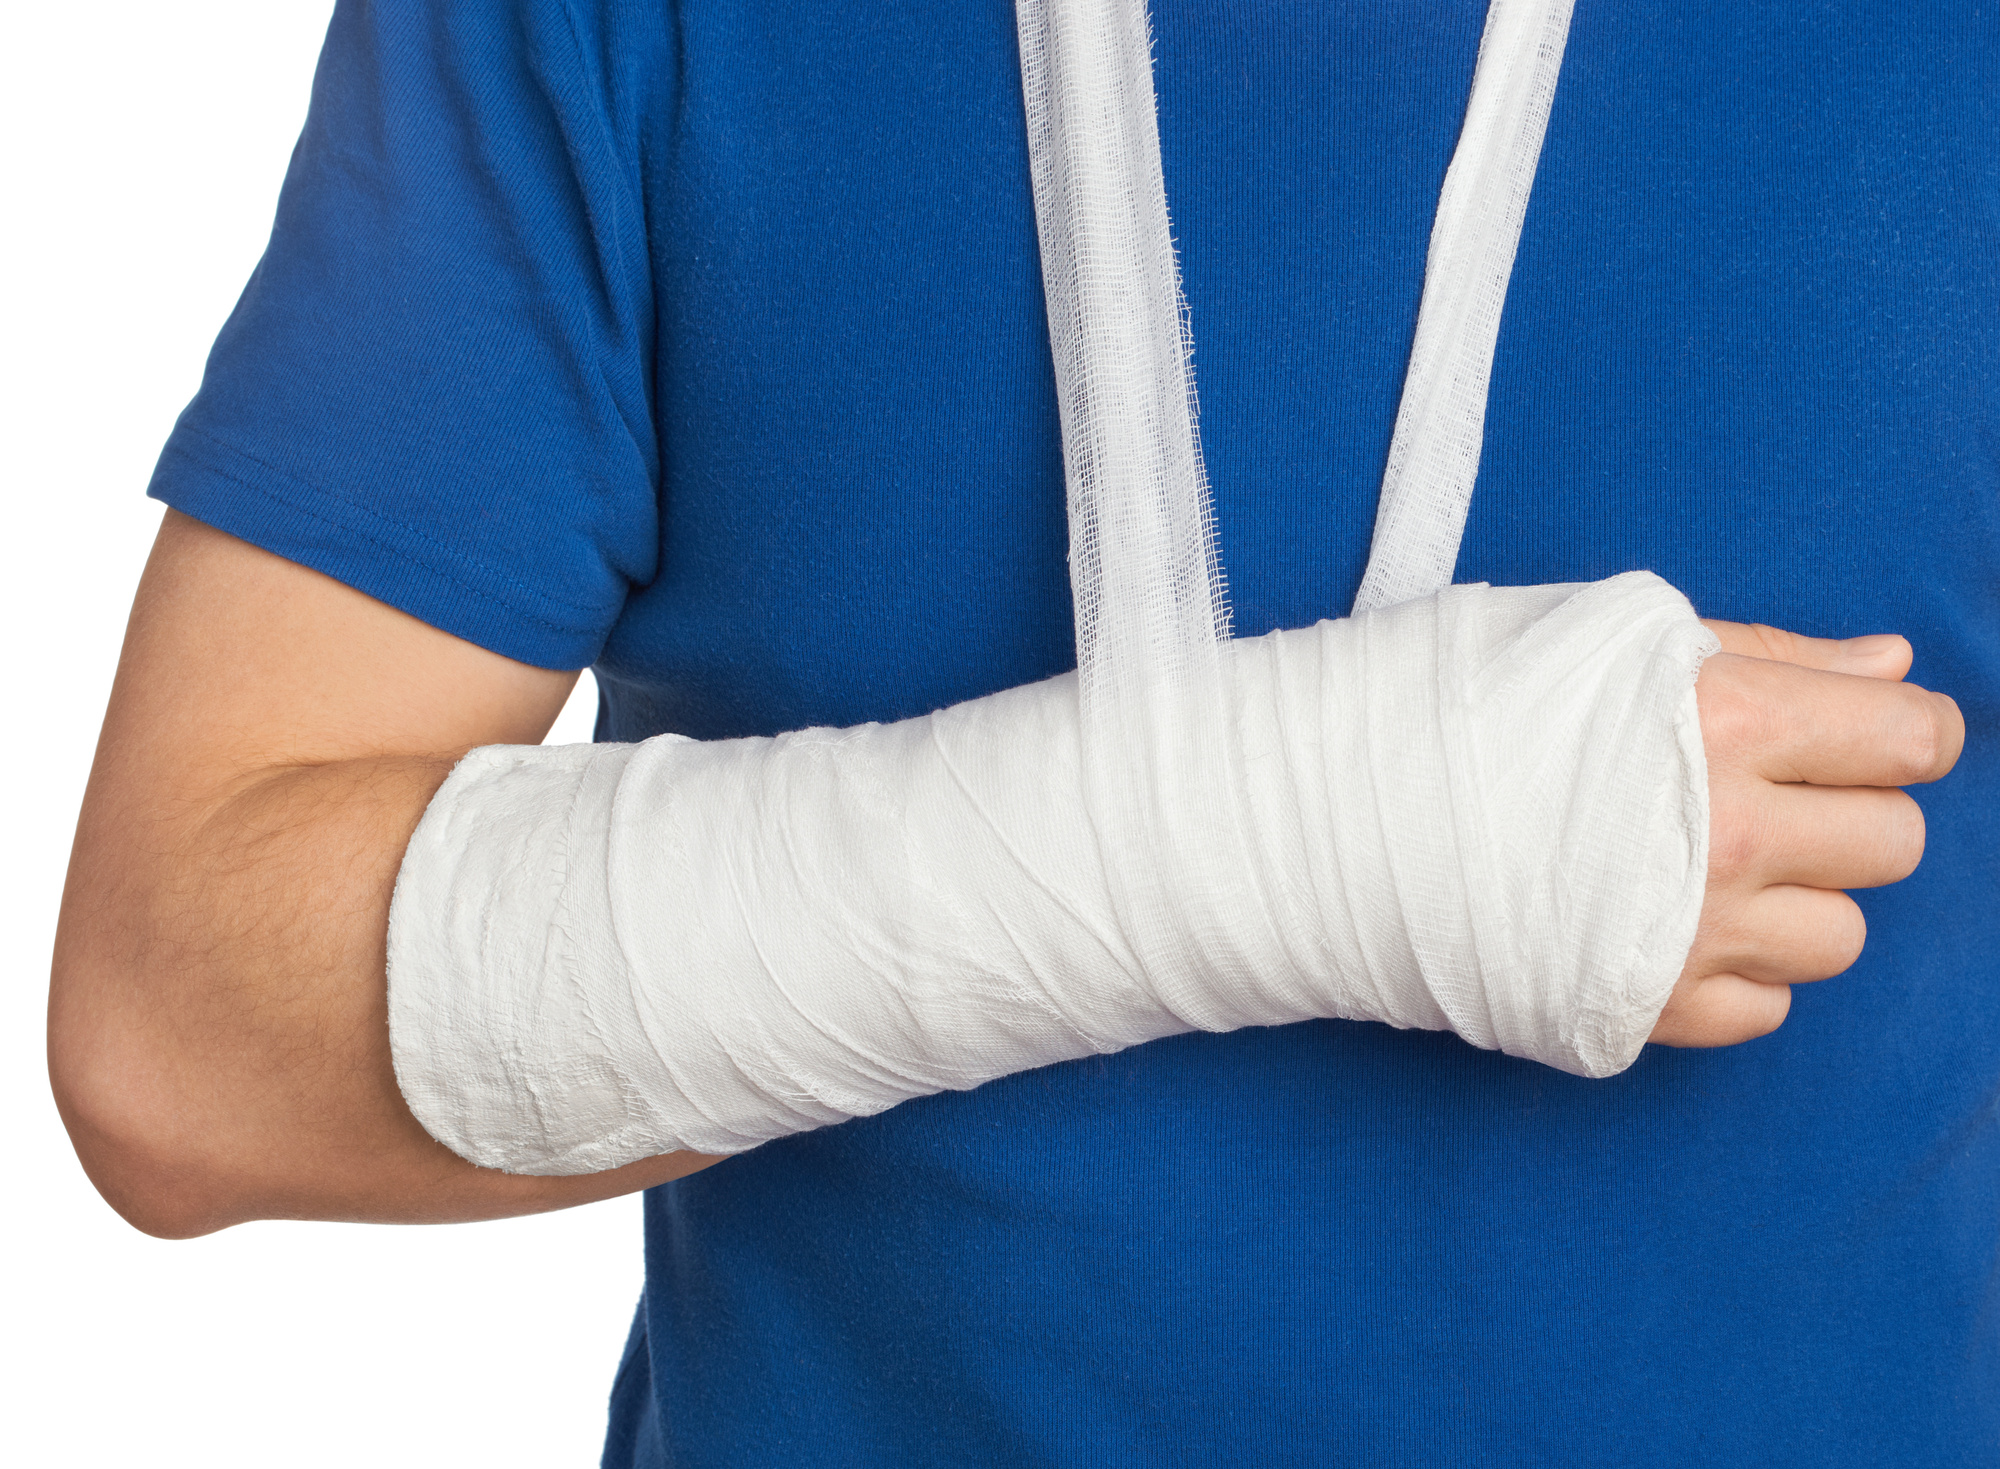 La recuperación de una fractura de brazo depende de la parte afectada, la edad y estado de salud del paciente.